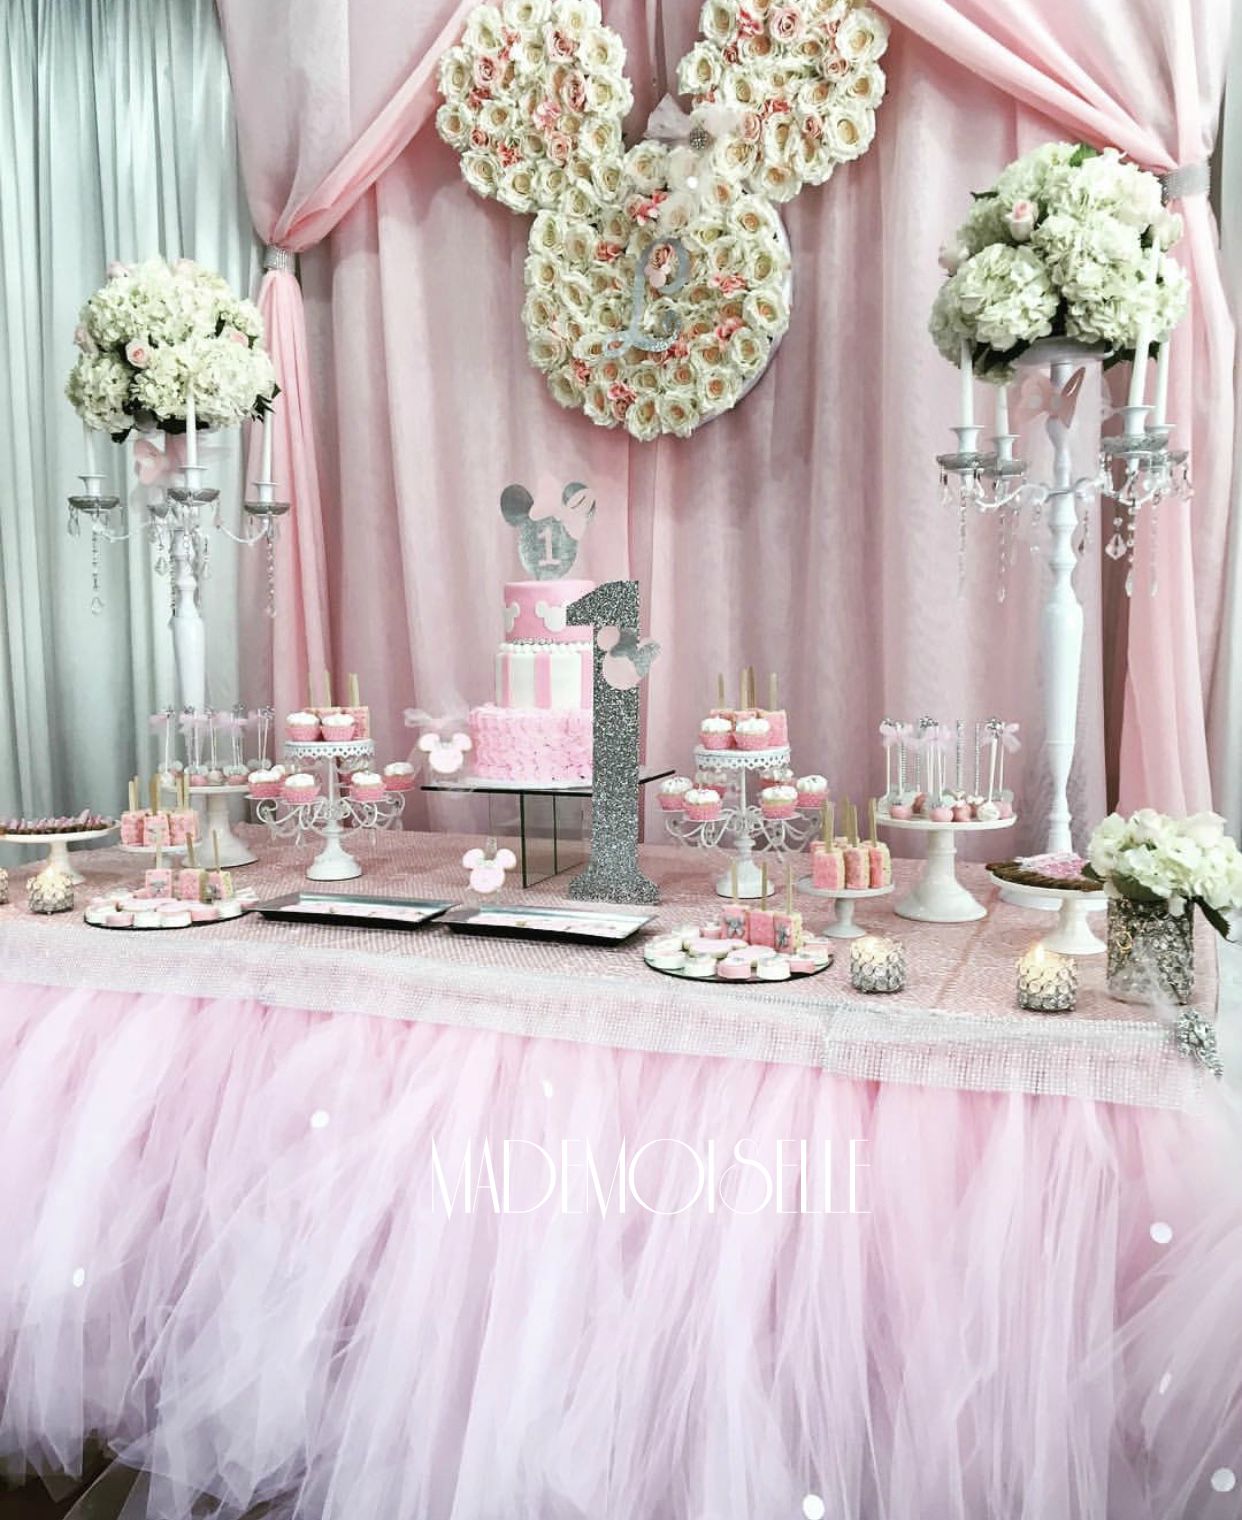 IMG_E4536-slatki sto-dekoracija rodjendana-dekoracija za krstenje-kolacici-nezno roze zlatna dekoracija slatkog stola- ruze